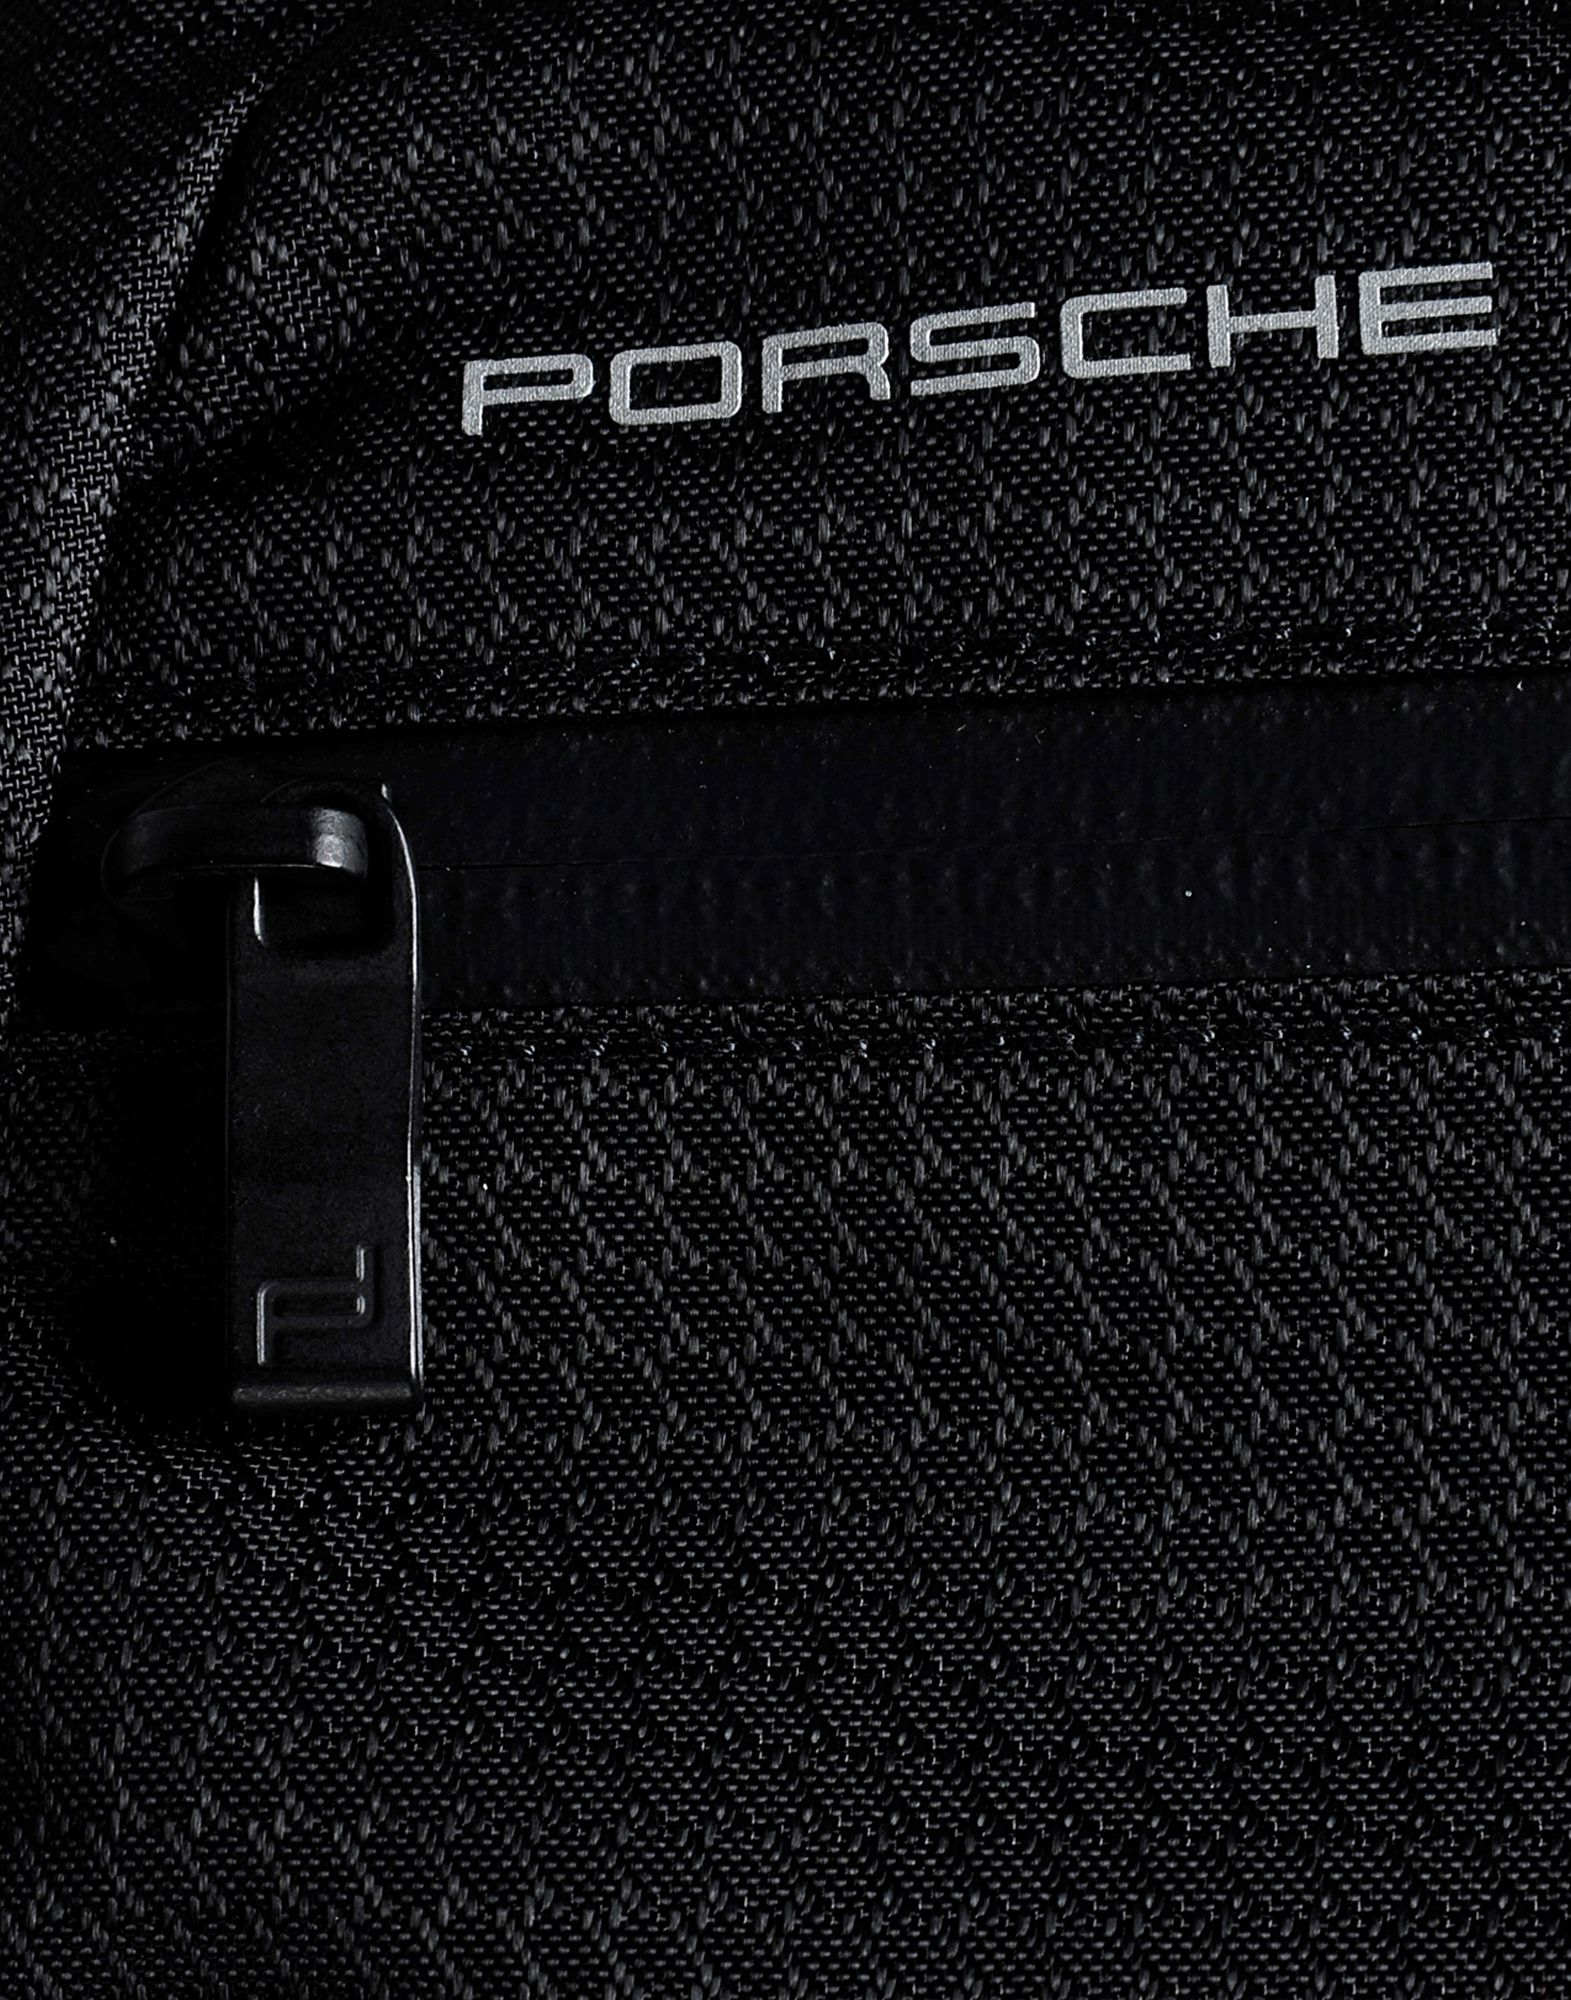 Men shoulder bag Porsche Design Roadster black leather casual travel  crossbody